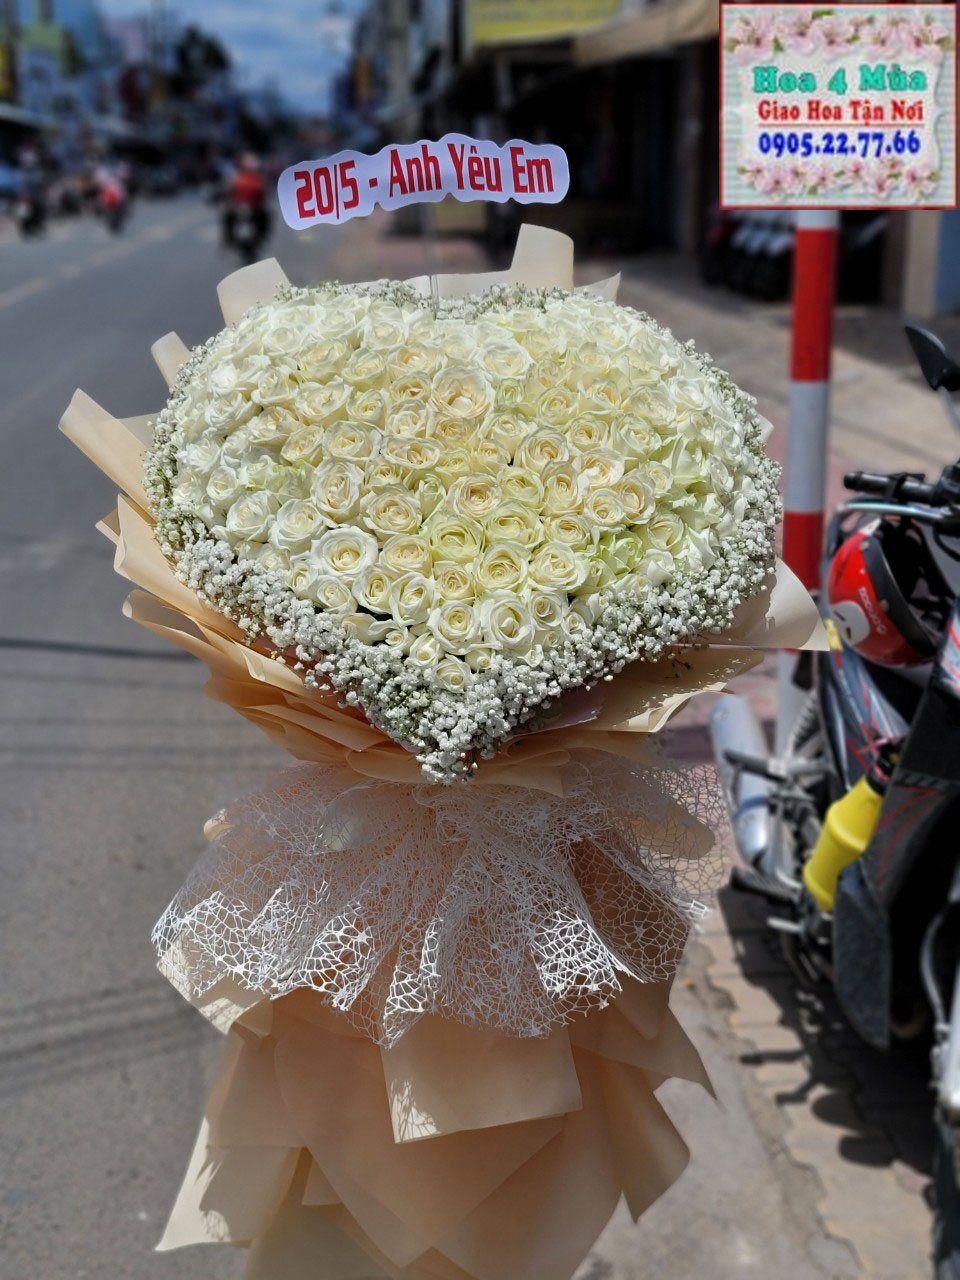 Shop Hoa Tươi Ninh Sơn, Ninh Thuận